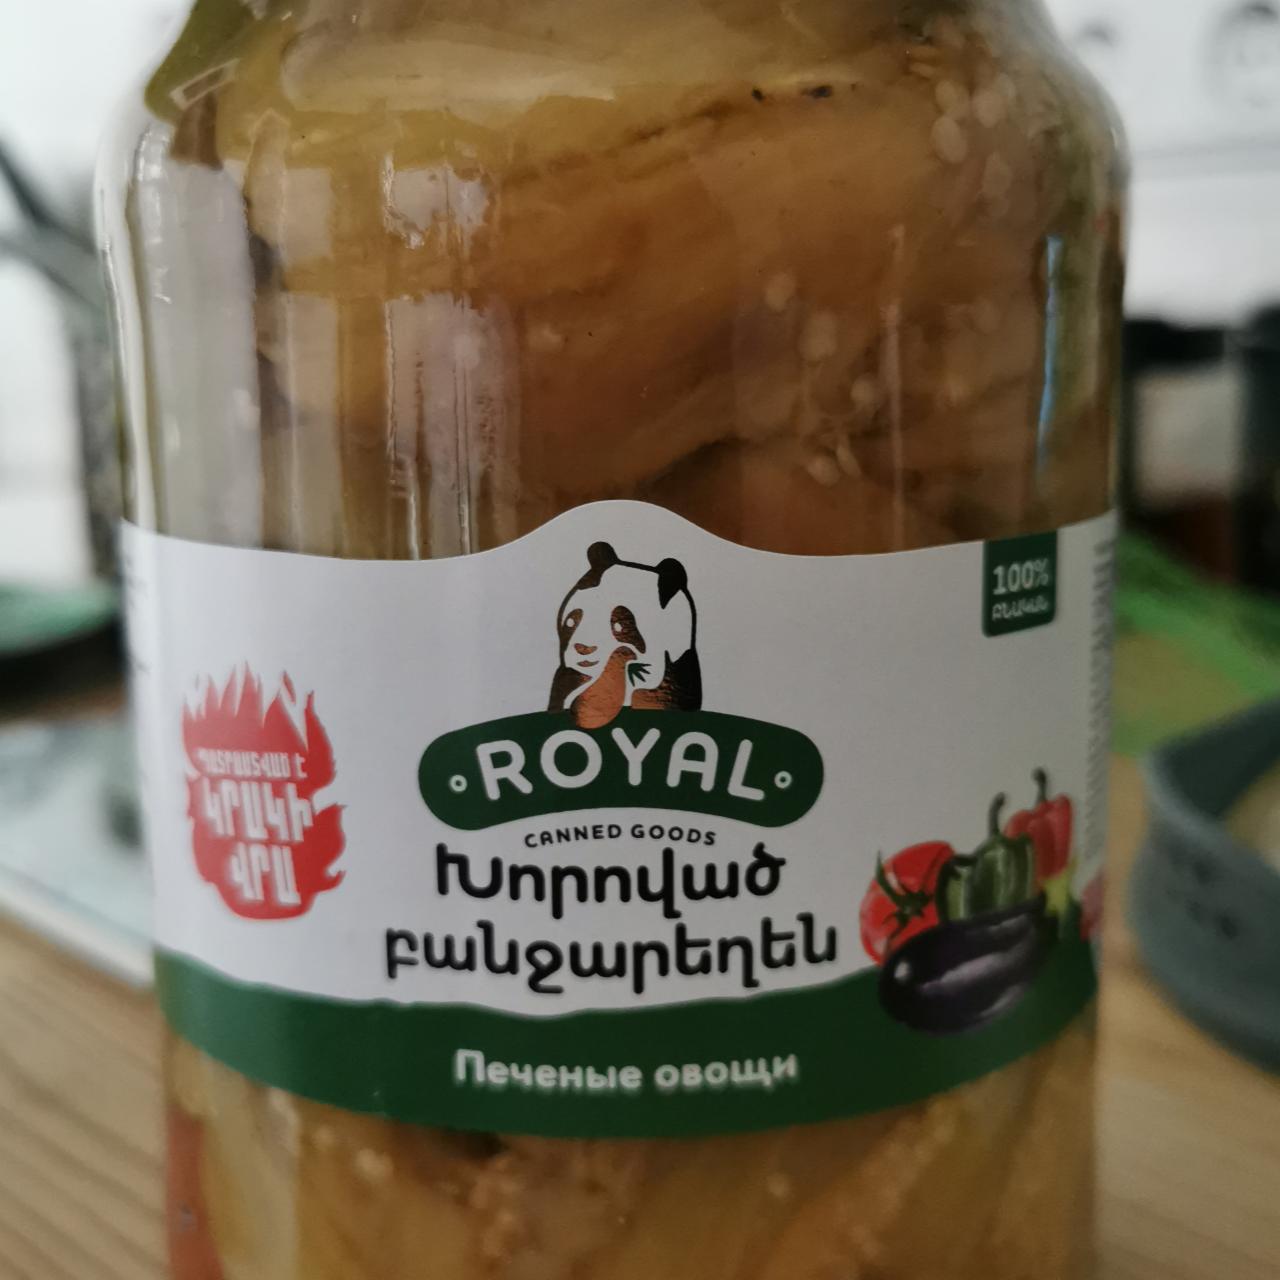 Фото - Печёные овощи canned goods Royal